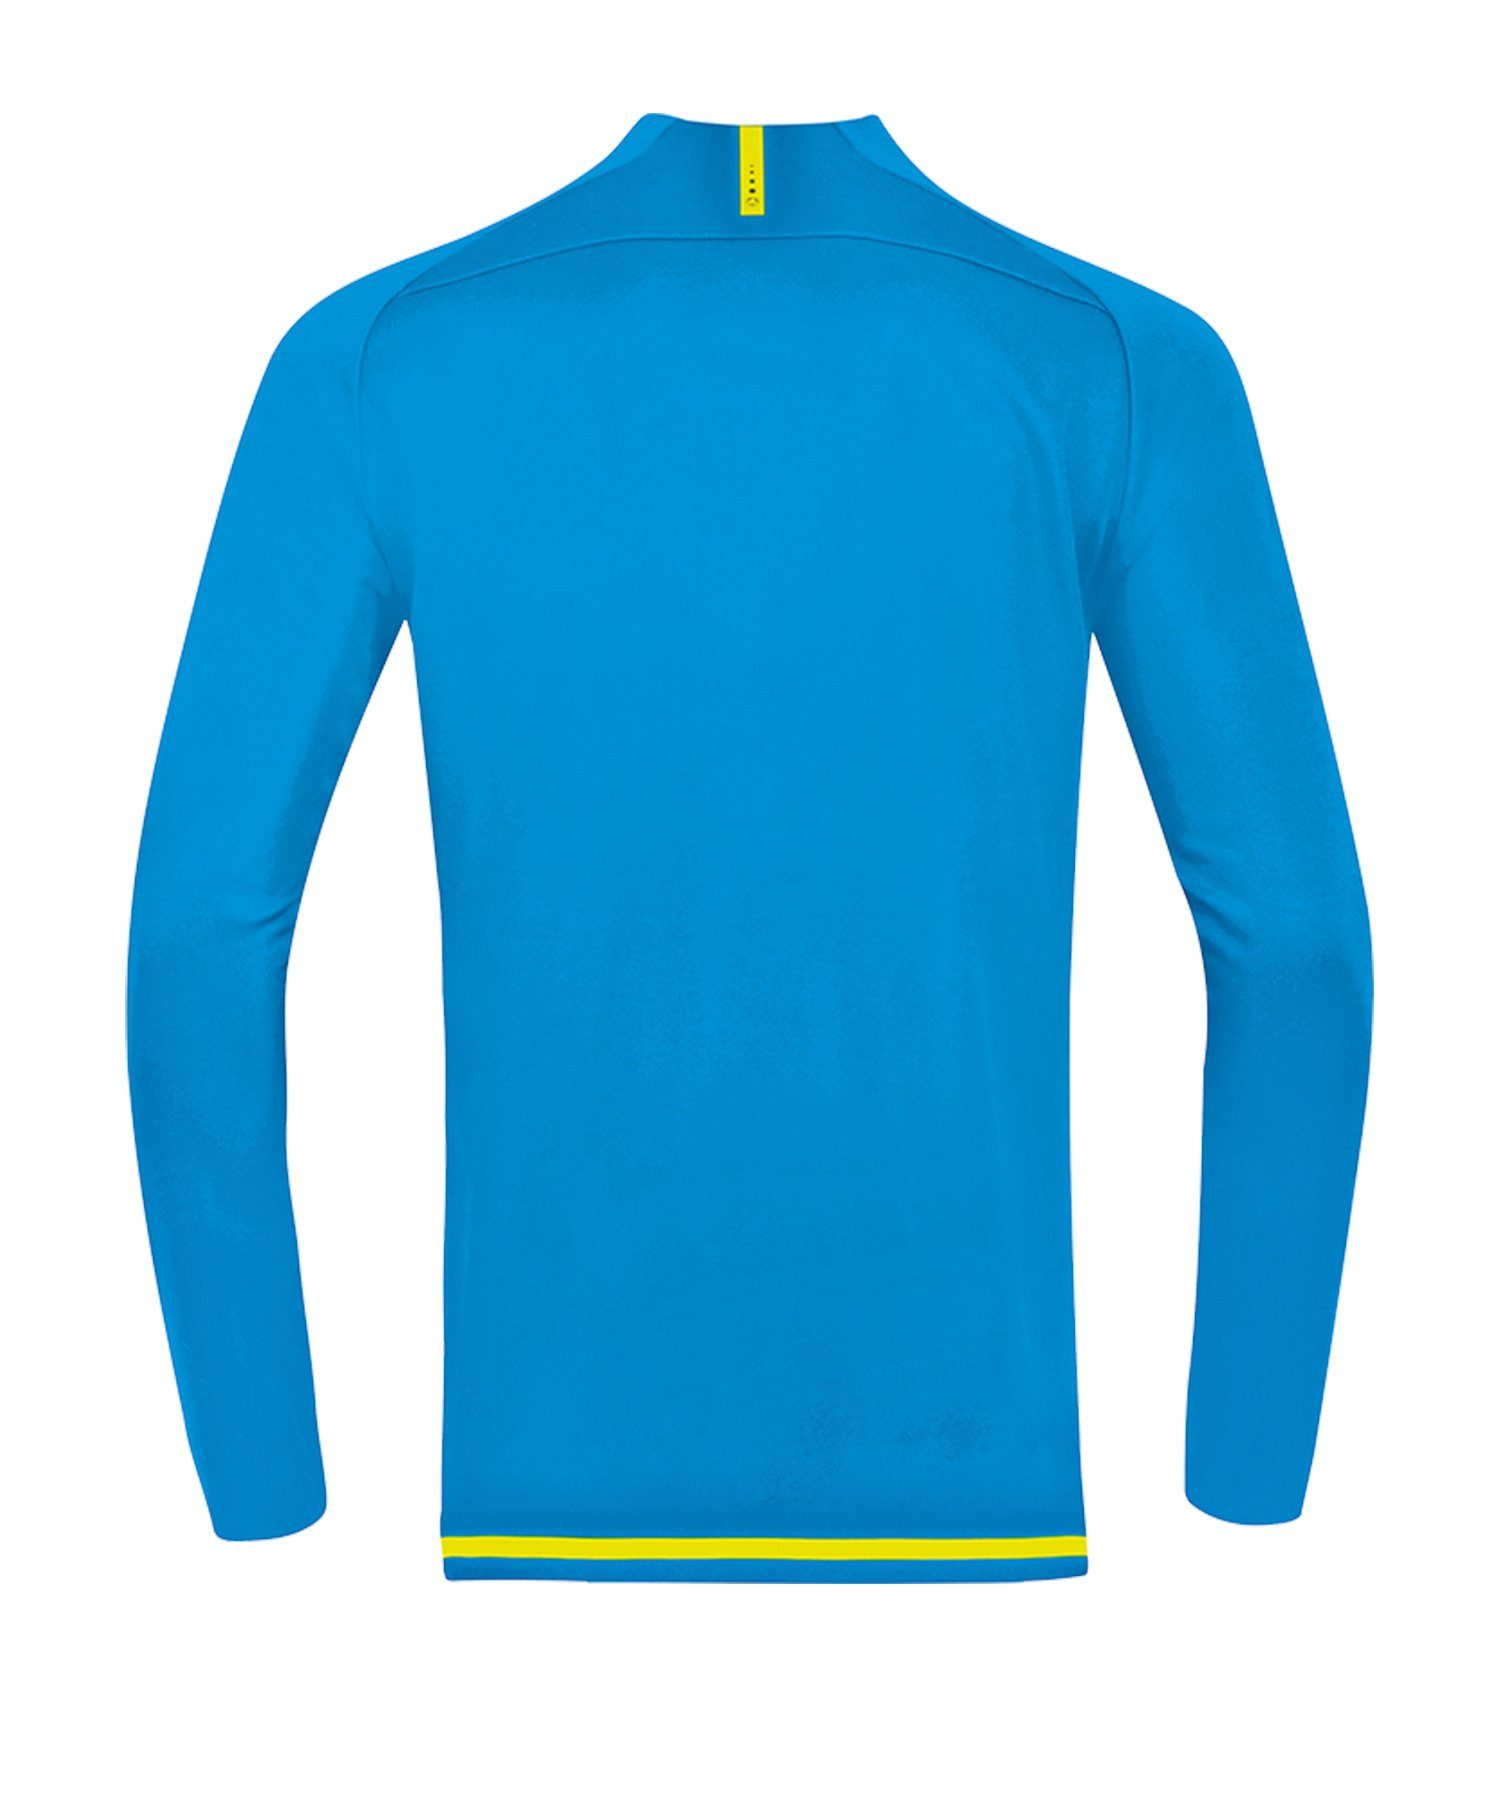 Striker Ziptop 2.0 Sweatshirt BlauGelb Jako